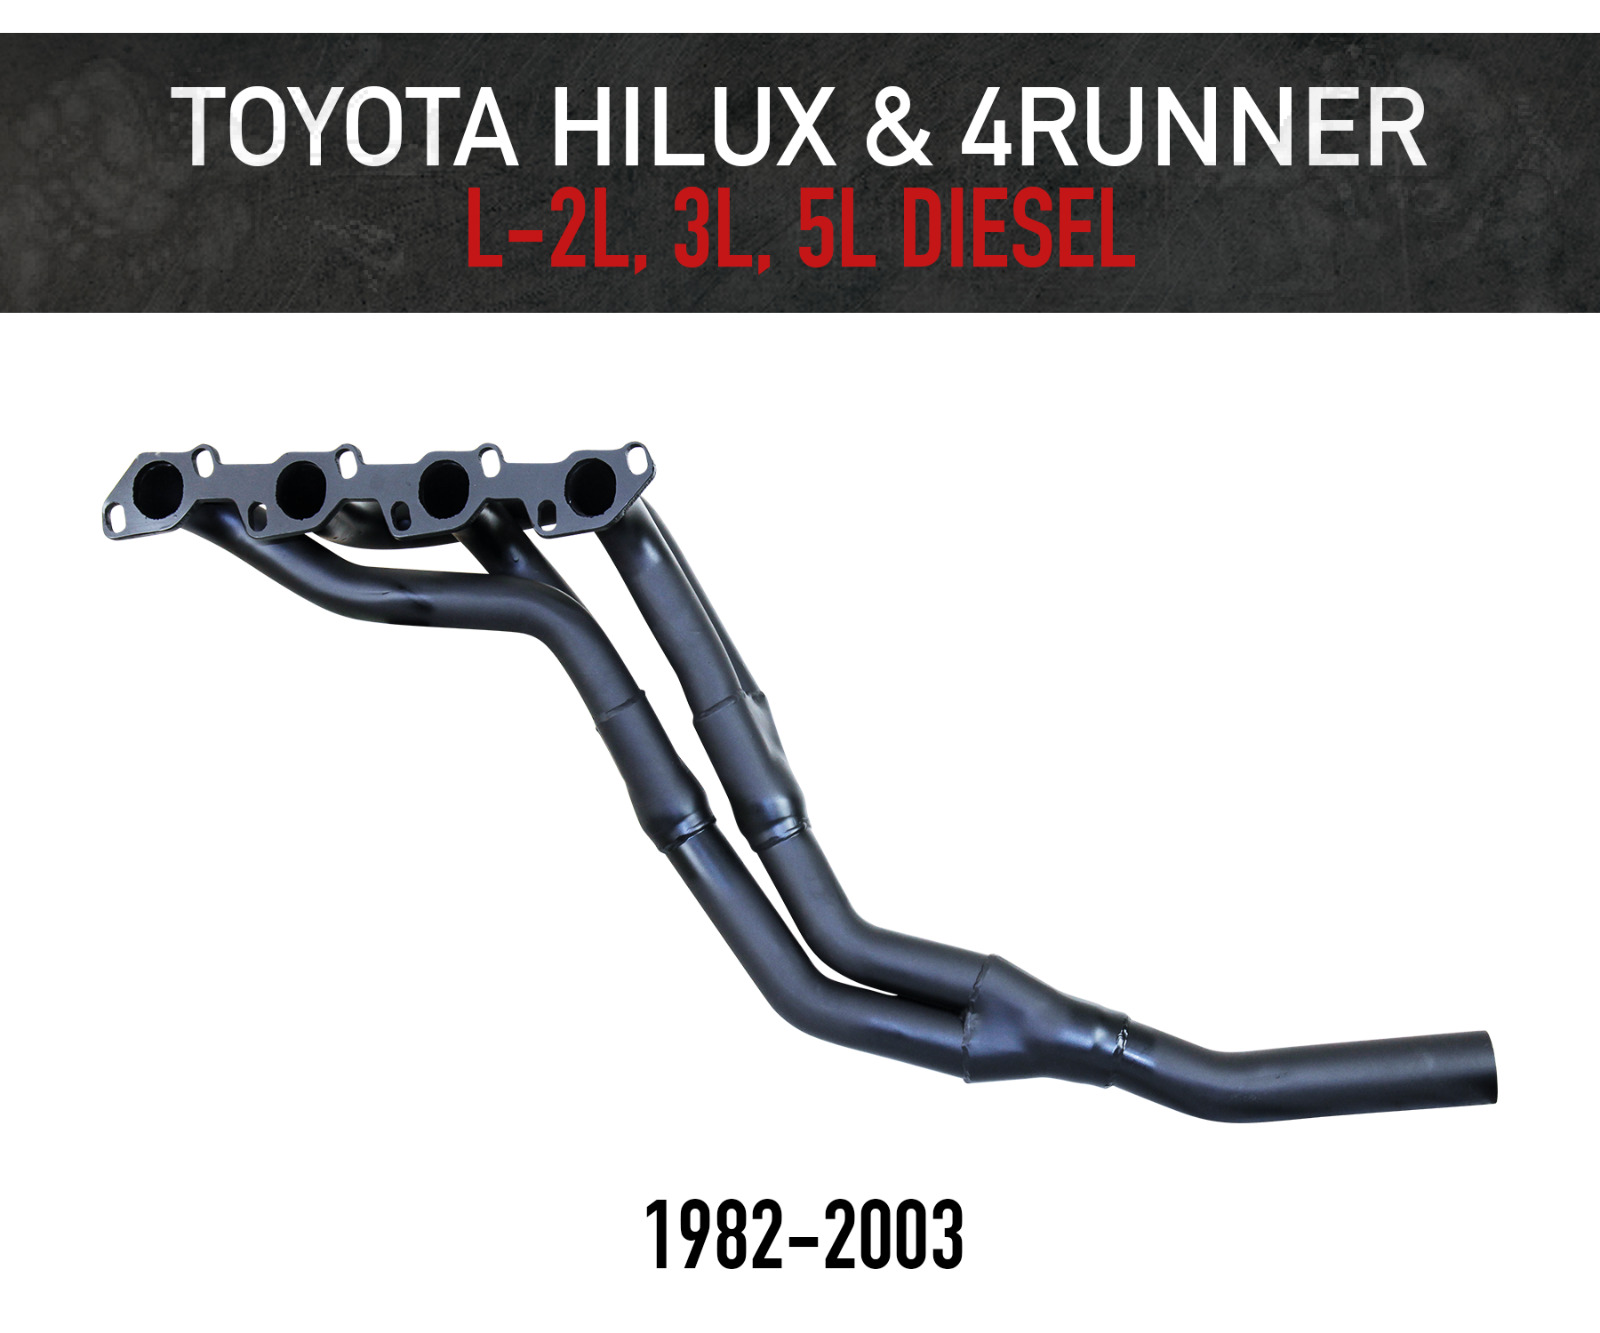 Headers for Toyota Hilux & 4Runner L, 2L, 3L, 5L Diesel (1982-2003) FREE GASKET